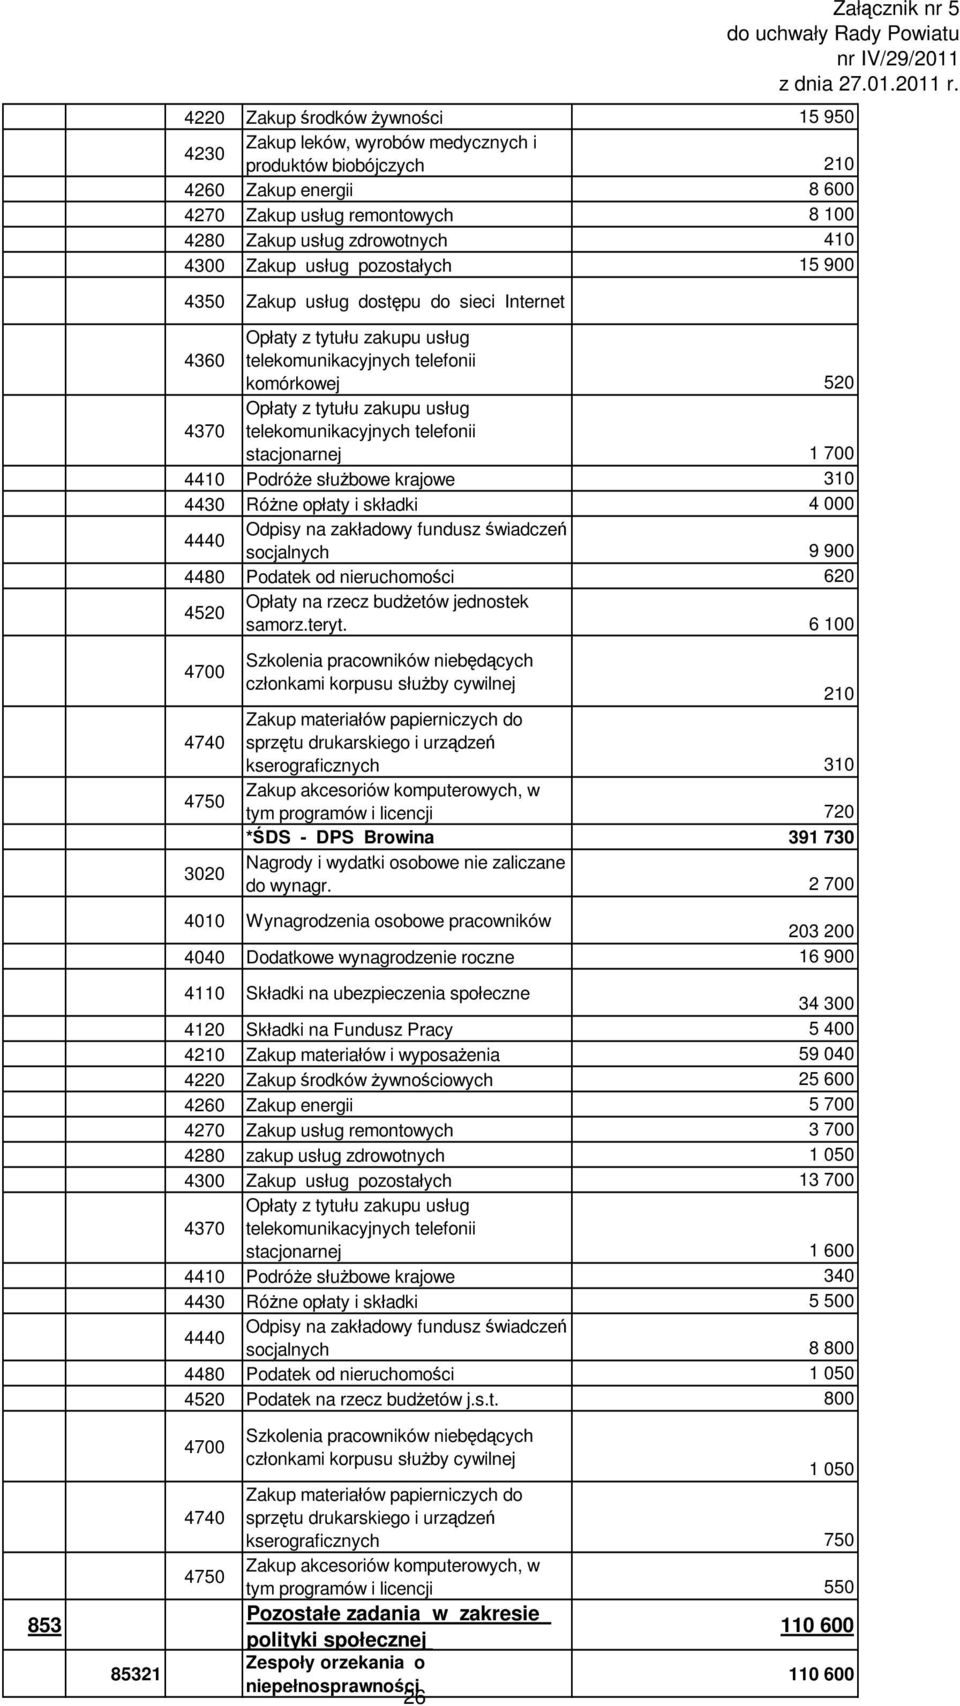 62 452 Opłaty na rzecz budżetów jednostek samorz.teryt.